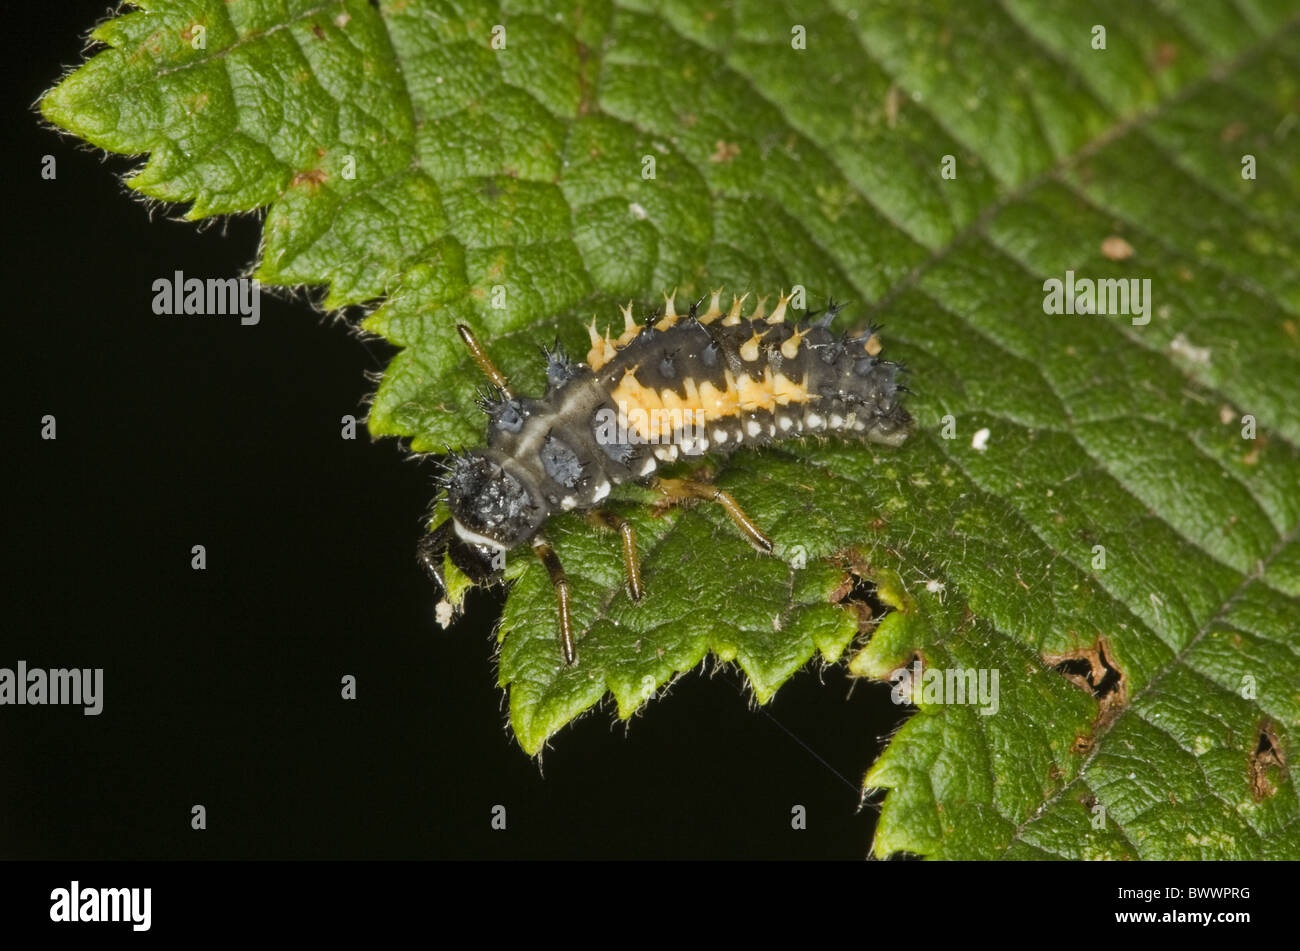 Wirbellose Wirbellosen Tier Arthropoden Gliederfüßer Insekt Insekten Käfer Käfer Ladybird Marienkäfer Asia asiatisch Stockfoto